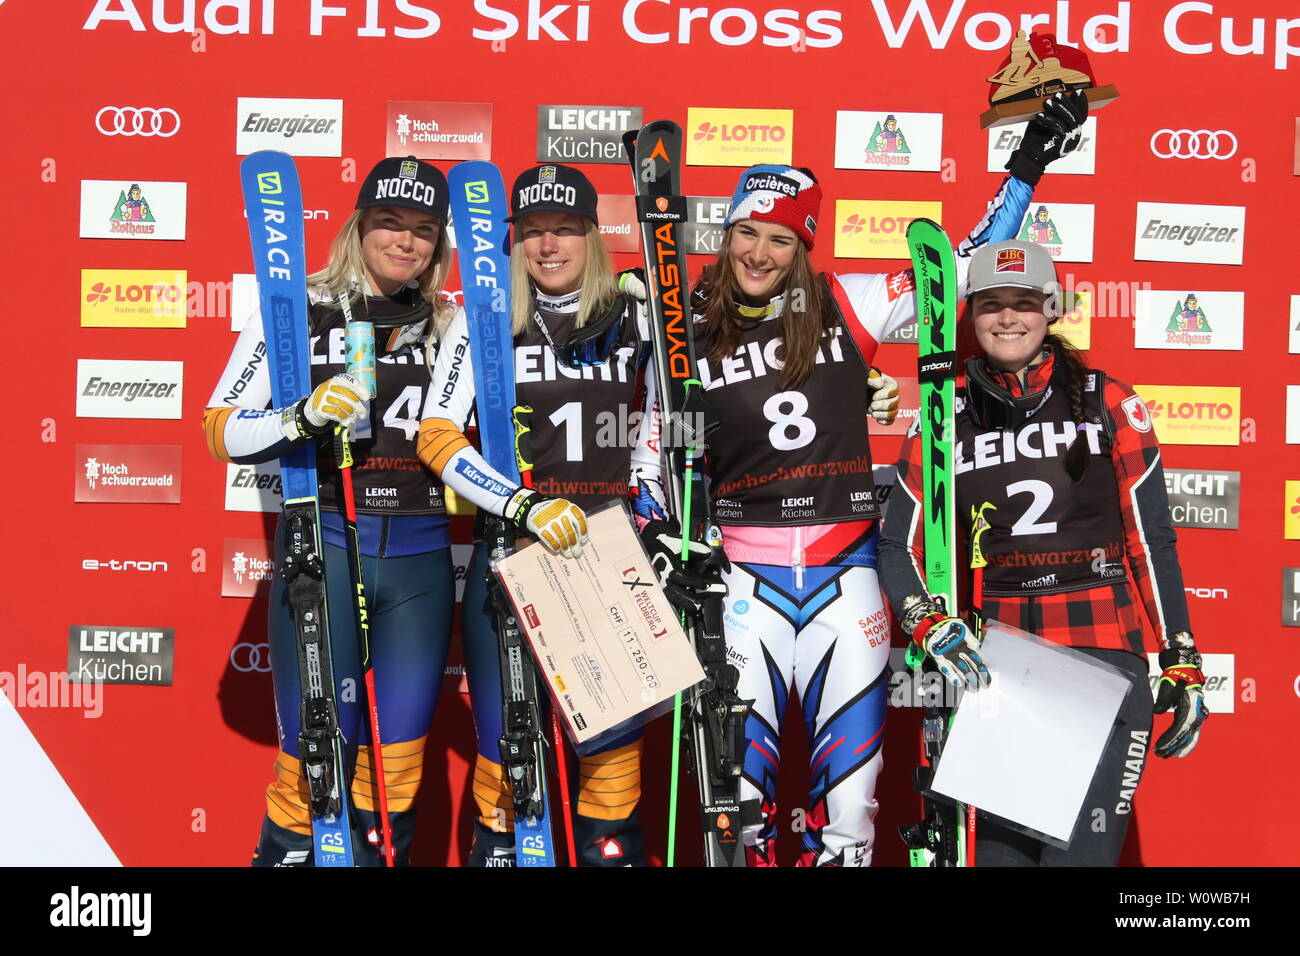 Strahlende Siegerinnen beim FIS Ski Cross Weltcup auf dem Feldberg, v.li. Lisa Andersson (Schweden /SWE), Sandra Naeslund (Schweden, Rang 1), Alizee BARON (Frankreich / FRA) und Marielle Thompson (CAN/Rang 4) Stock Photo